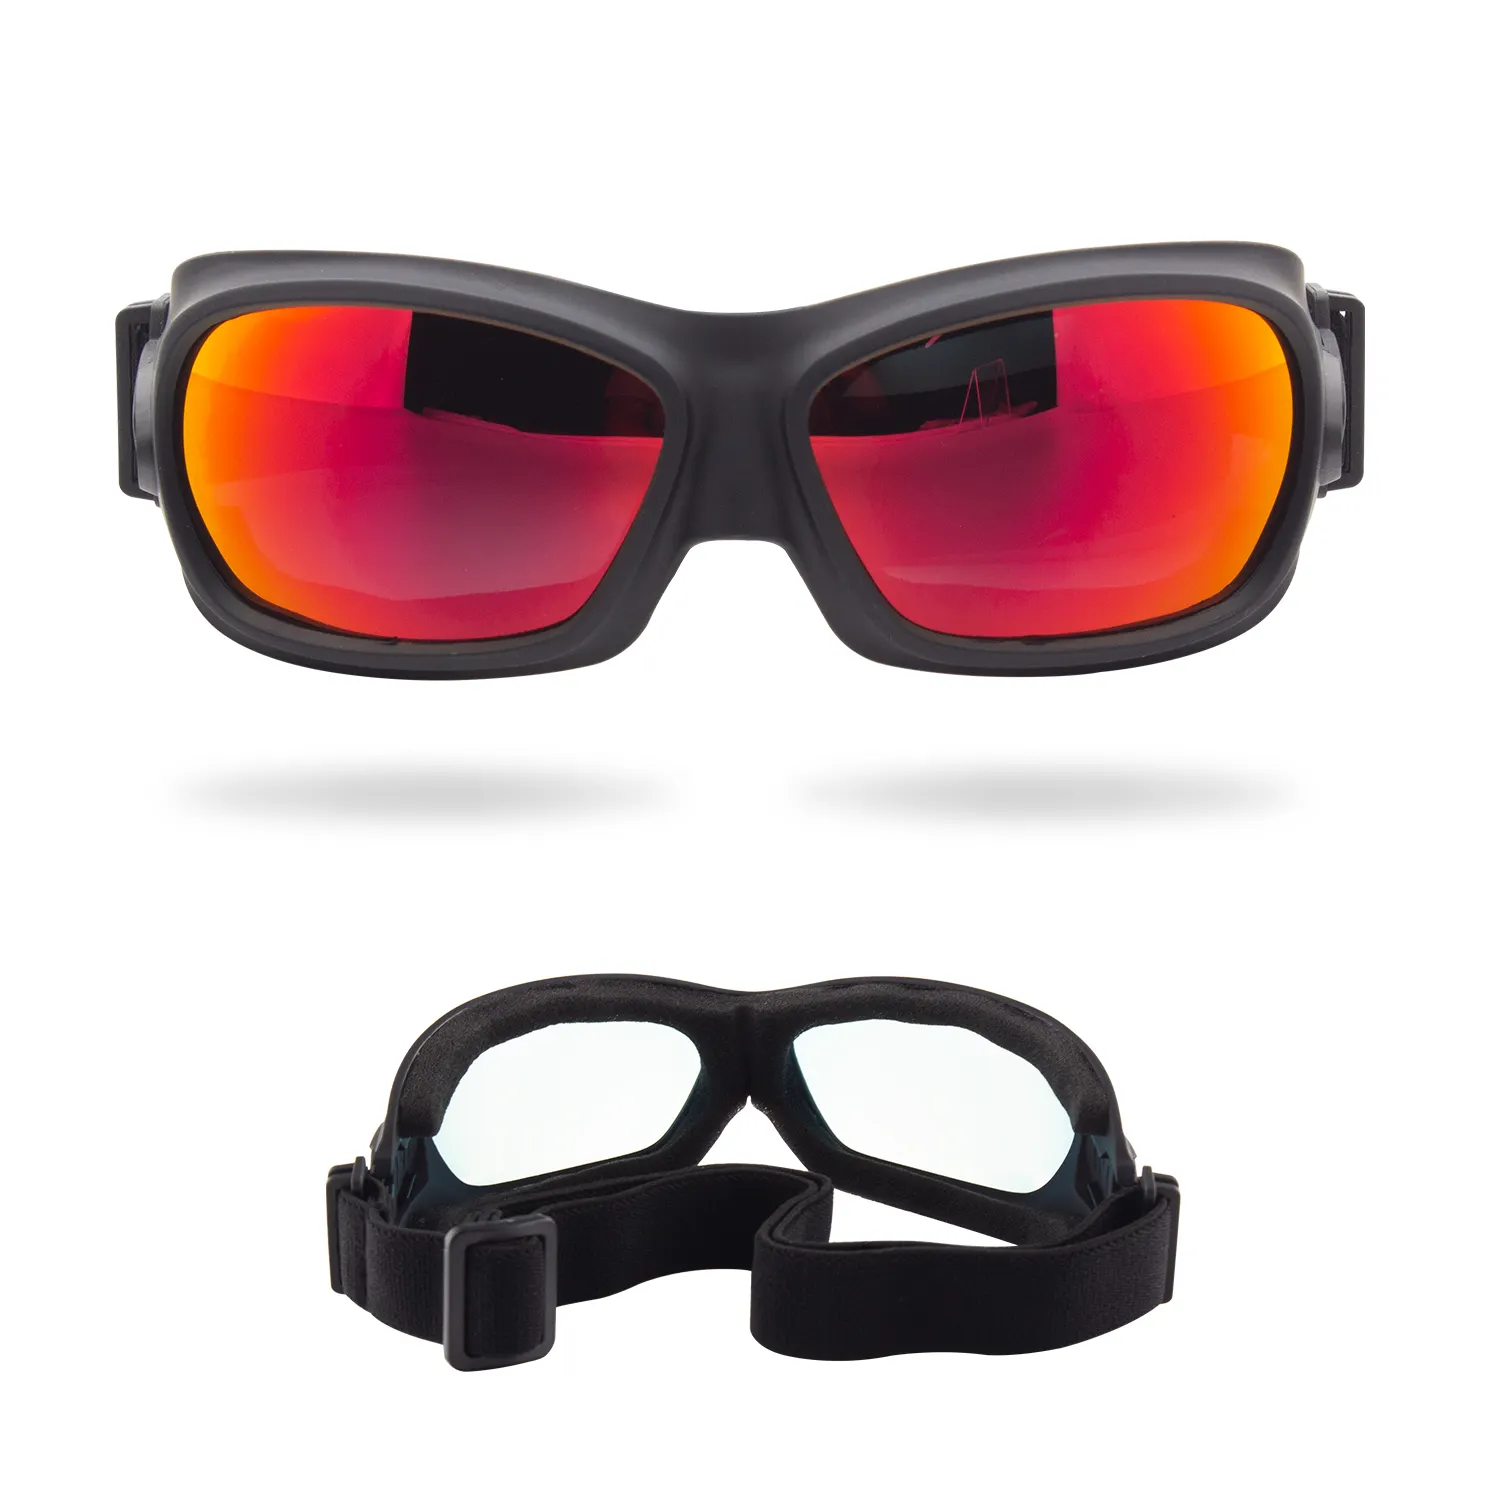 Harley motosiklet gözlüğü yeni açık spor bisiklet sürme gözlük rüzgar ve kum polarize gözlük